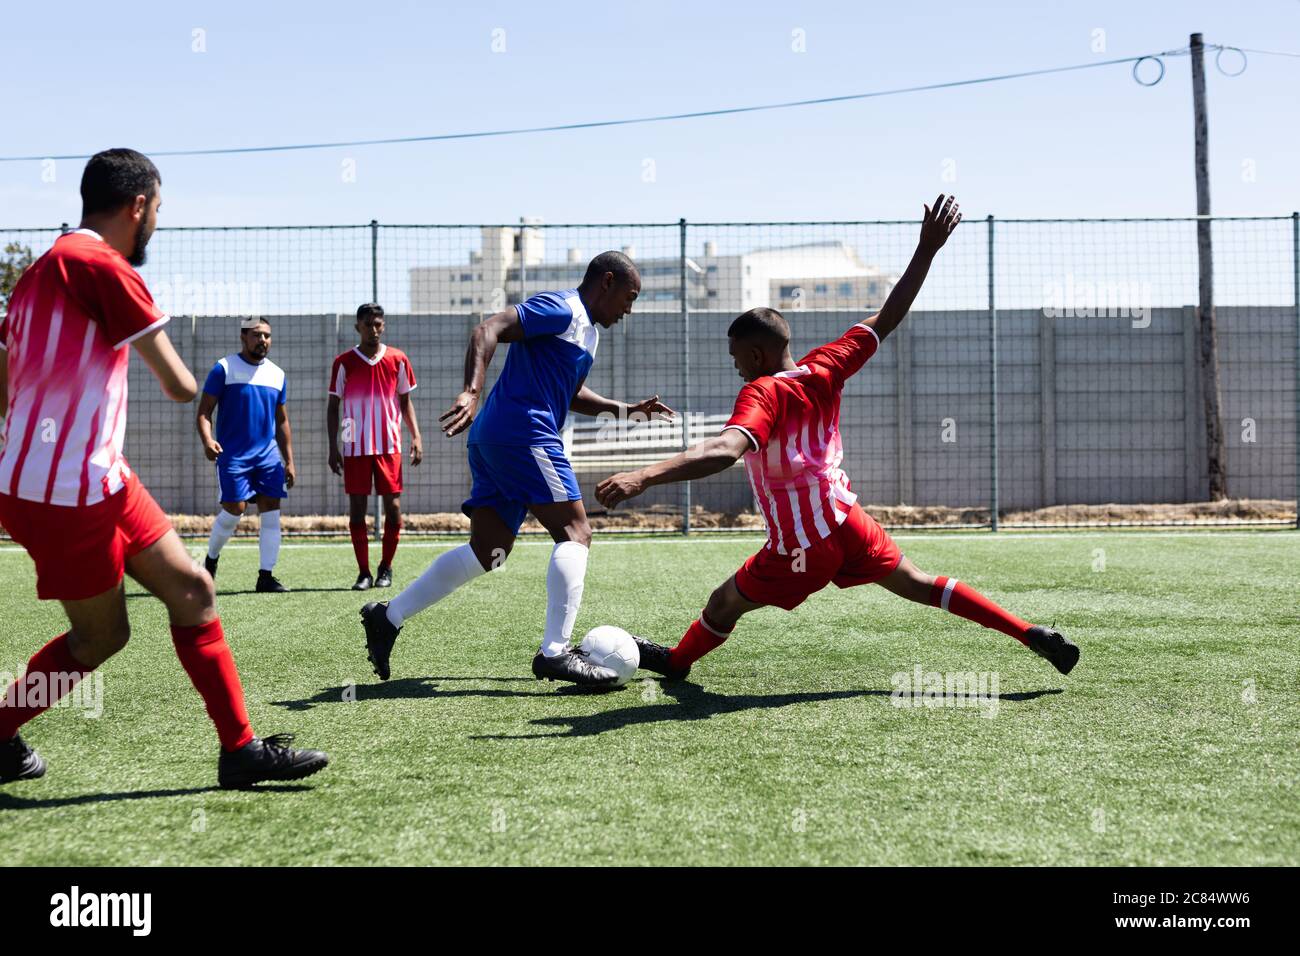 Zwei multiethnische Mannschaften von männlichen fünf A-Side-Fußballspieler tragen einen Mannschaftsstreifen spielen ein Spiel auf einem Sportplatz in der Sonne, Tackling und tritt bal Stockfoto